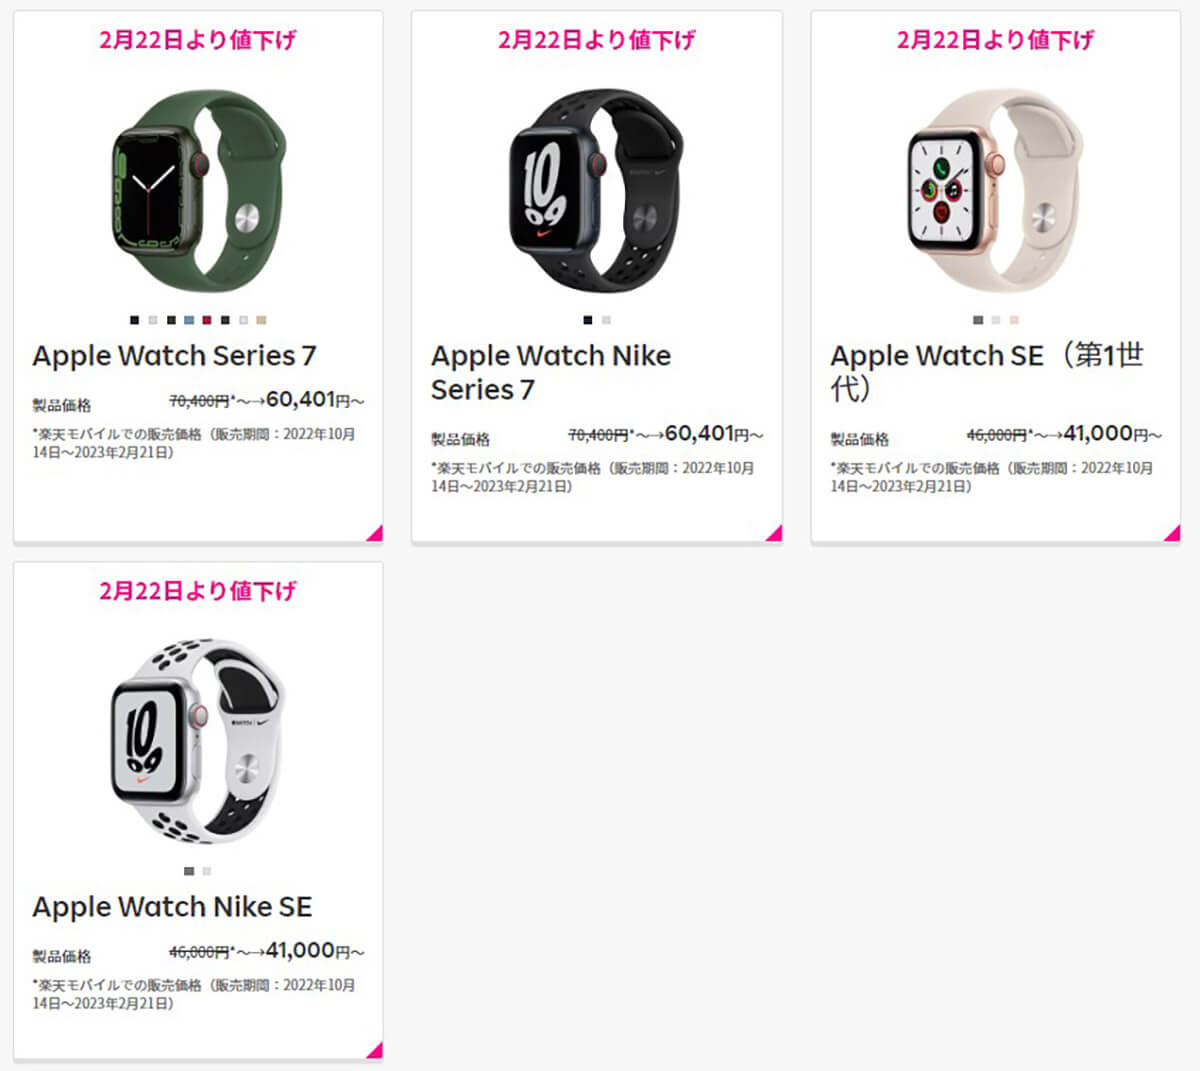 値下げされた機種はApple Watch Series 7とApple Watch SE（第1世代）